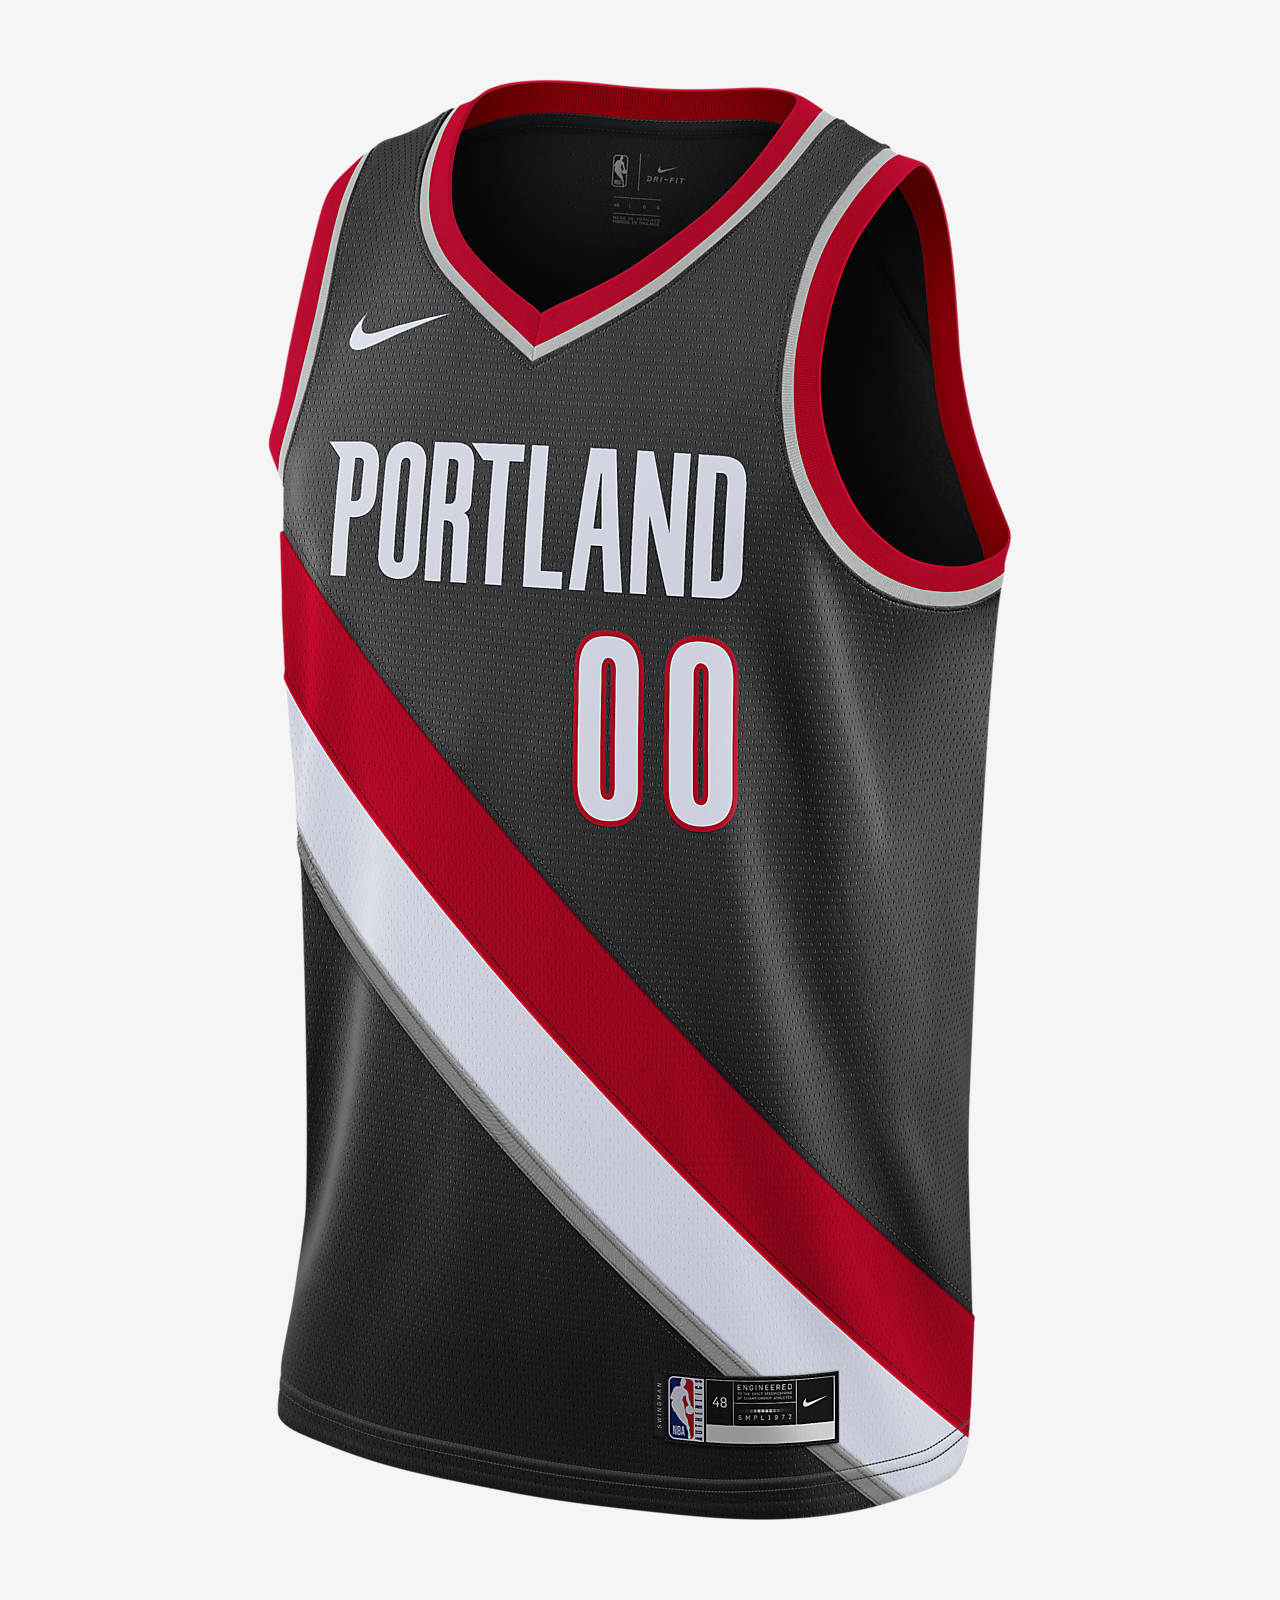 2020 赛季波特兰开拓者队 Icon Edition Nike NBA Swingman Jersey 男子球衣